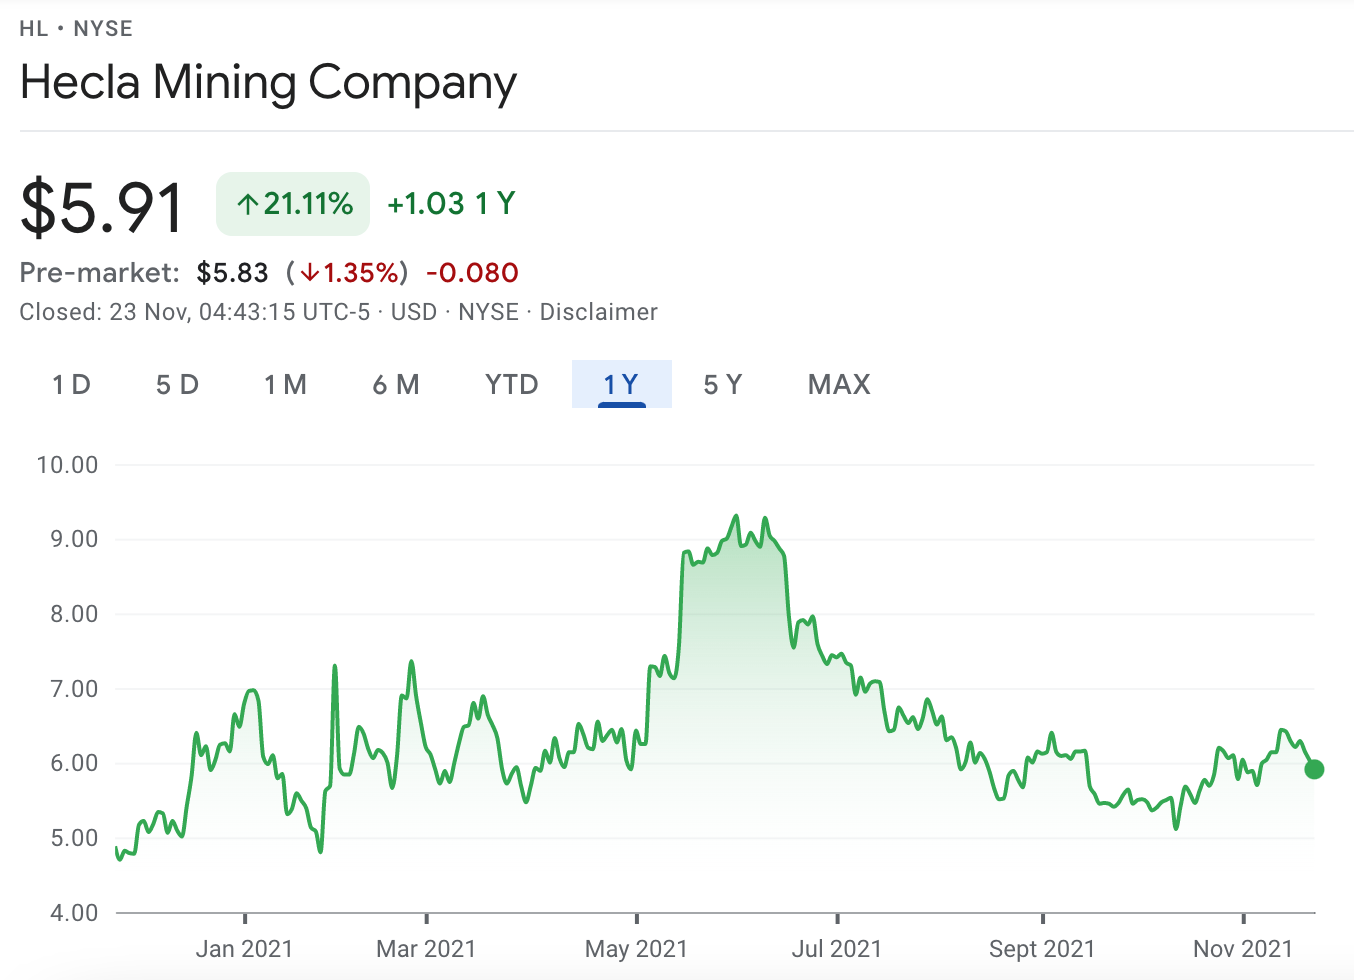 hecla mining price chart